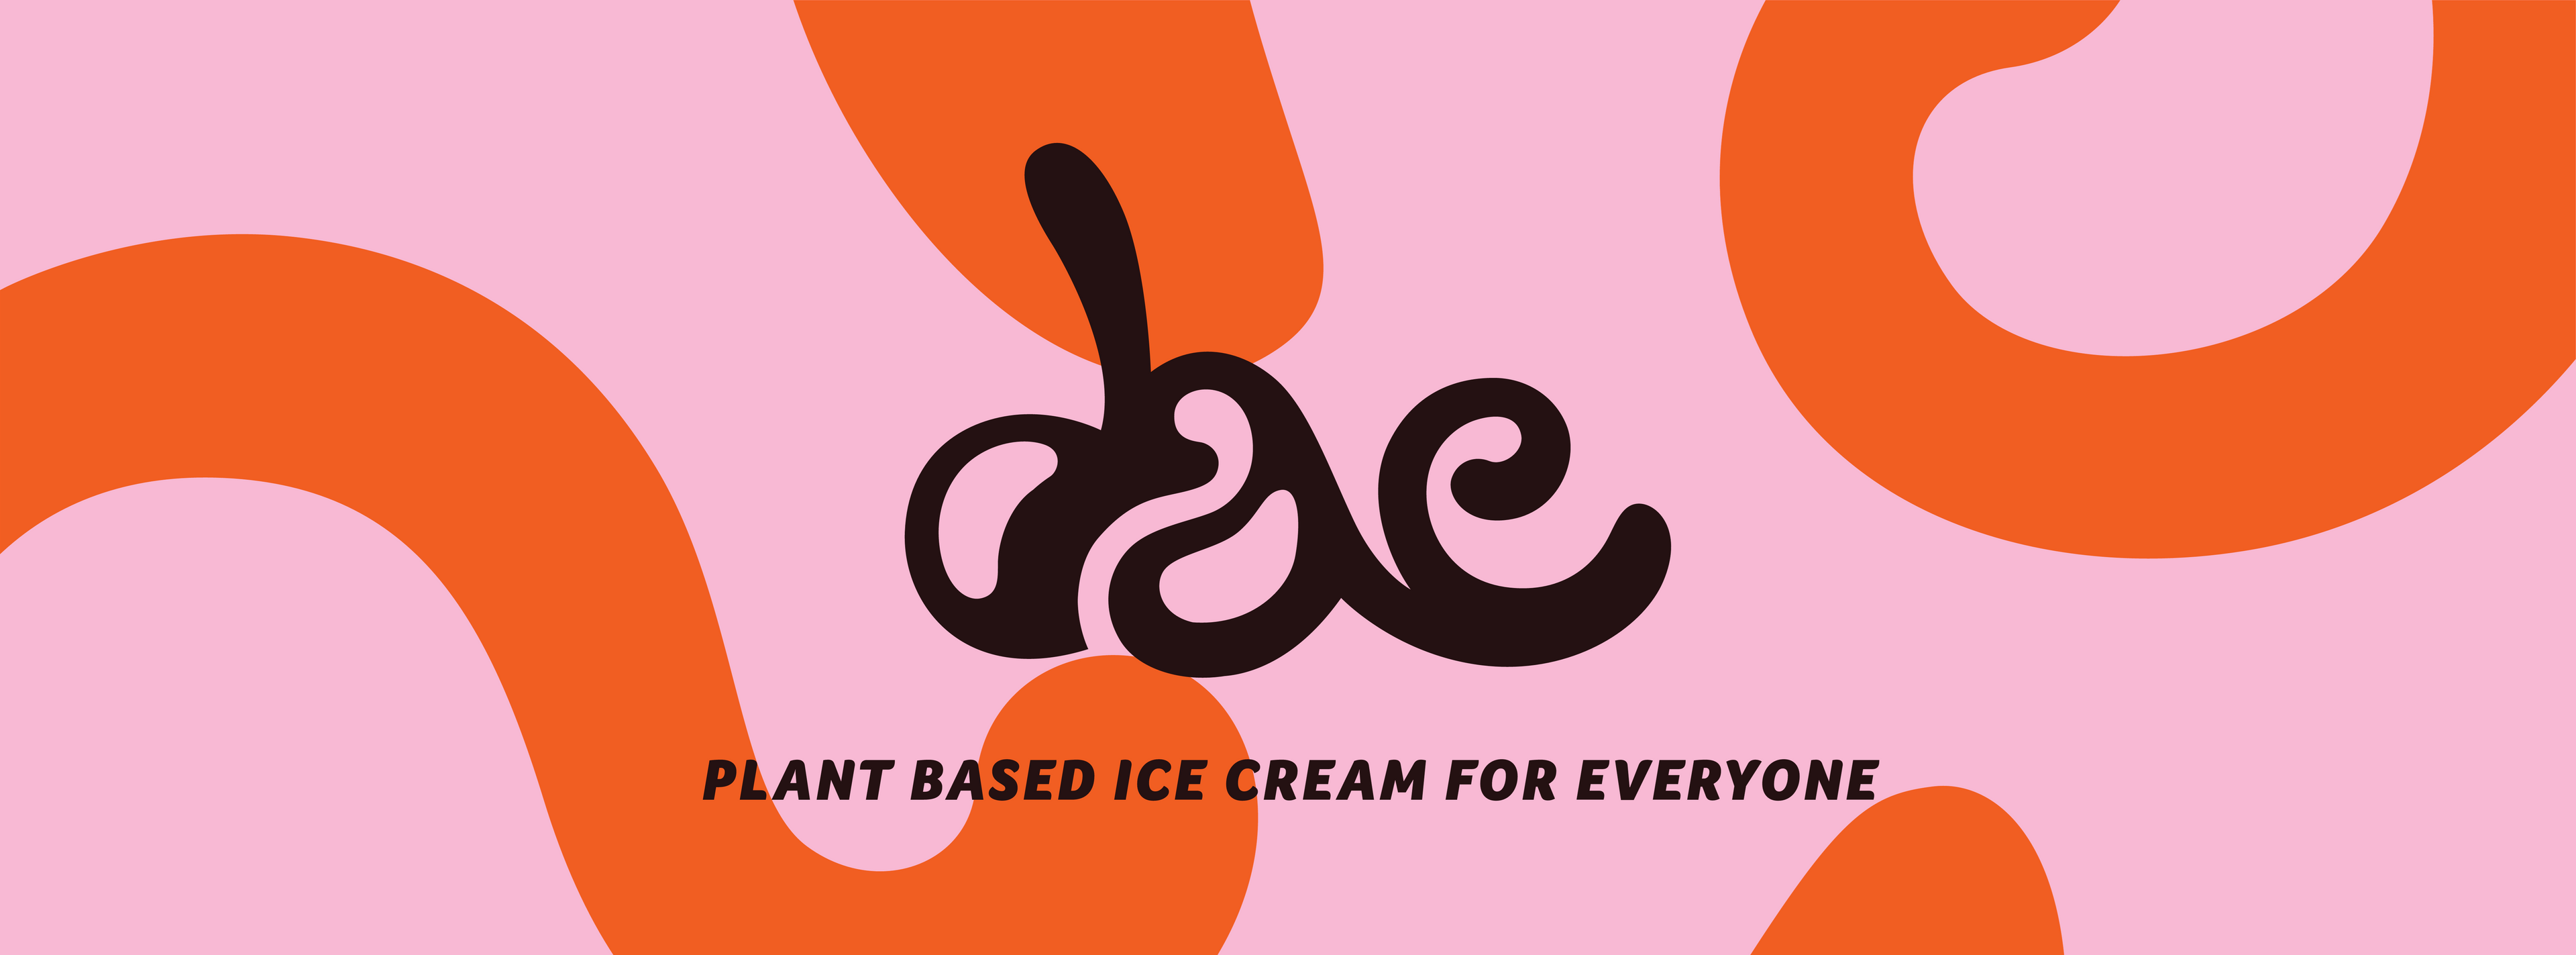 Dae Ice Cream